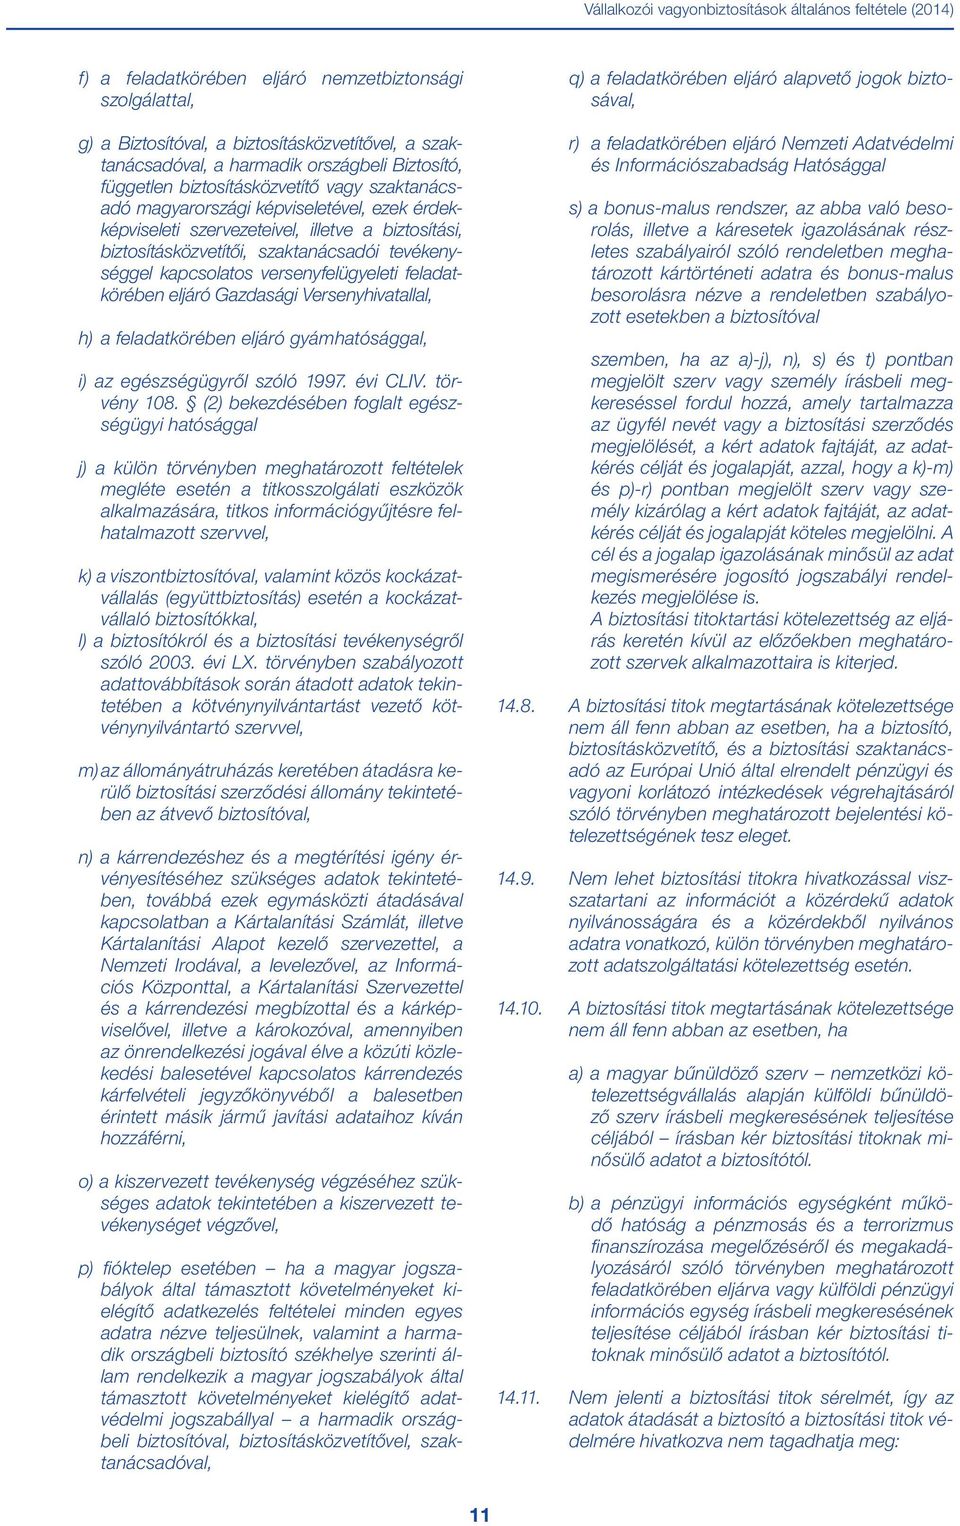 tevékenységgel kapcsolatos versenyfelügyeleti feladatkörében eljáró Gazdasági Versenyhivatallal, h) a feladatkörében eljáró gyámhatósággal, i) az egészségügyről szóló 1997. évi CLIV. törvény 108.